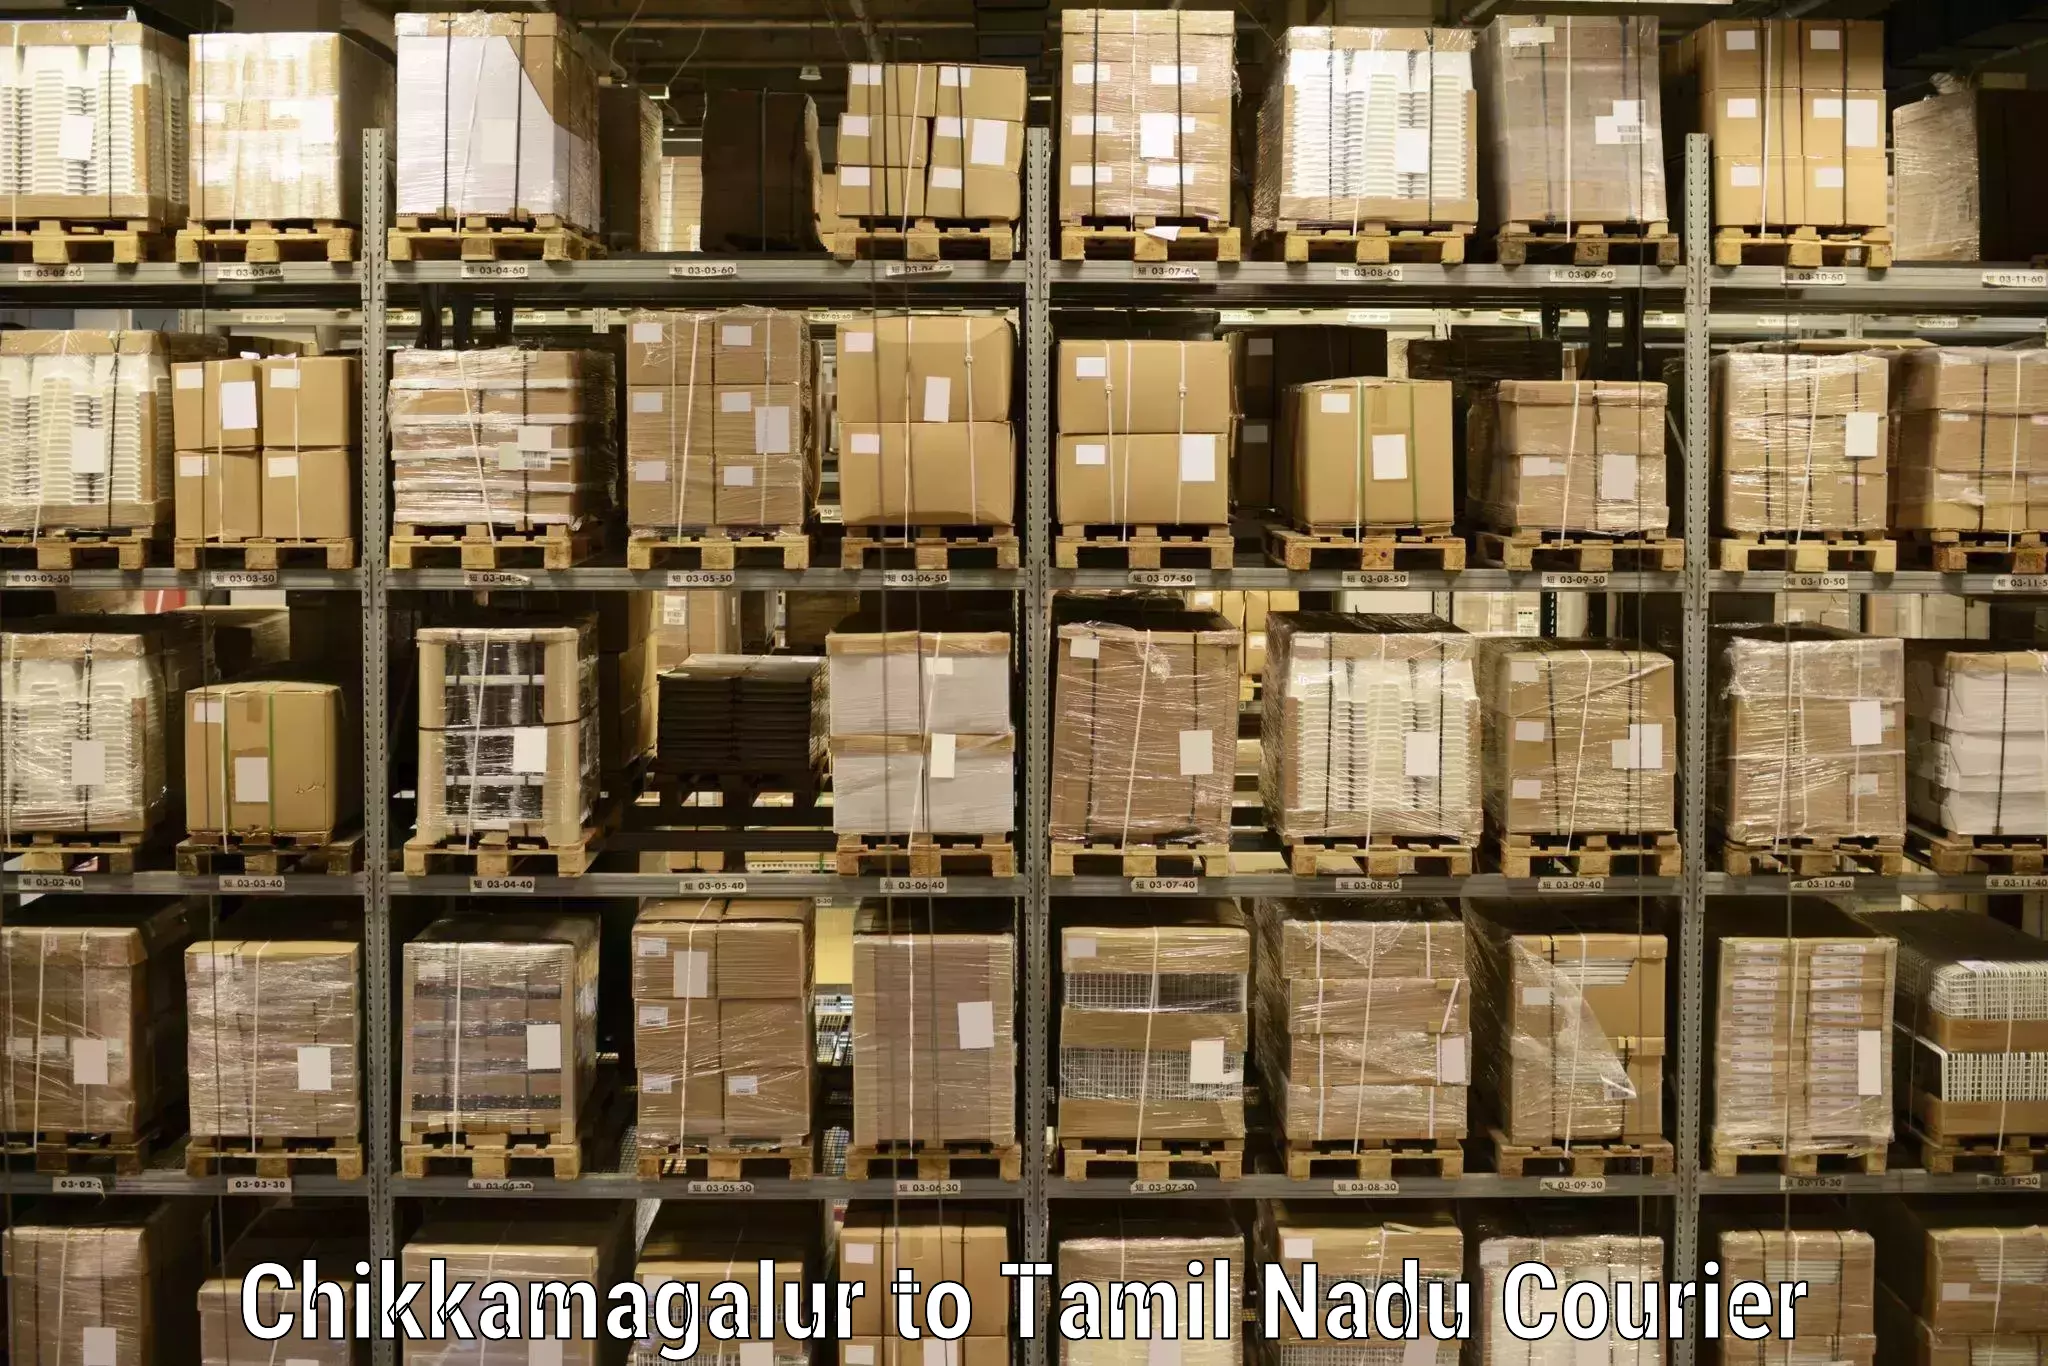 Advanced shipping technology Chikkamagalur to Thiruvadanai